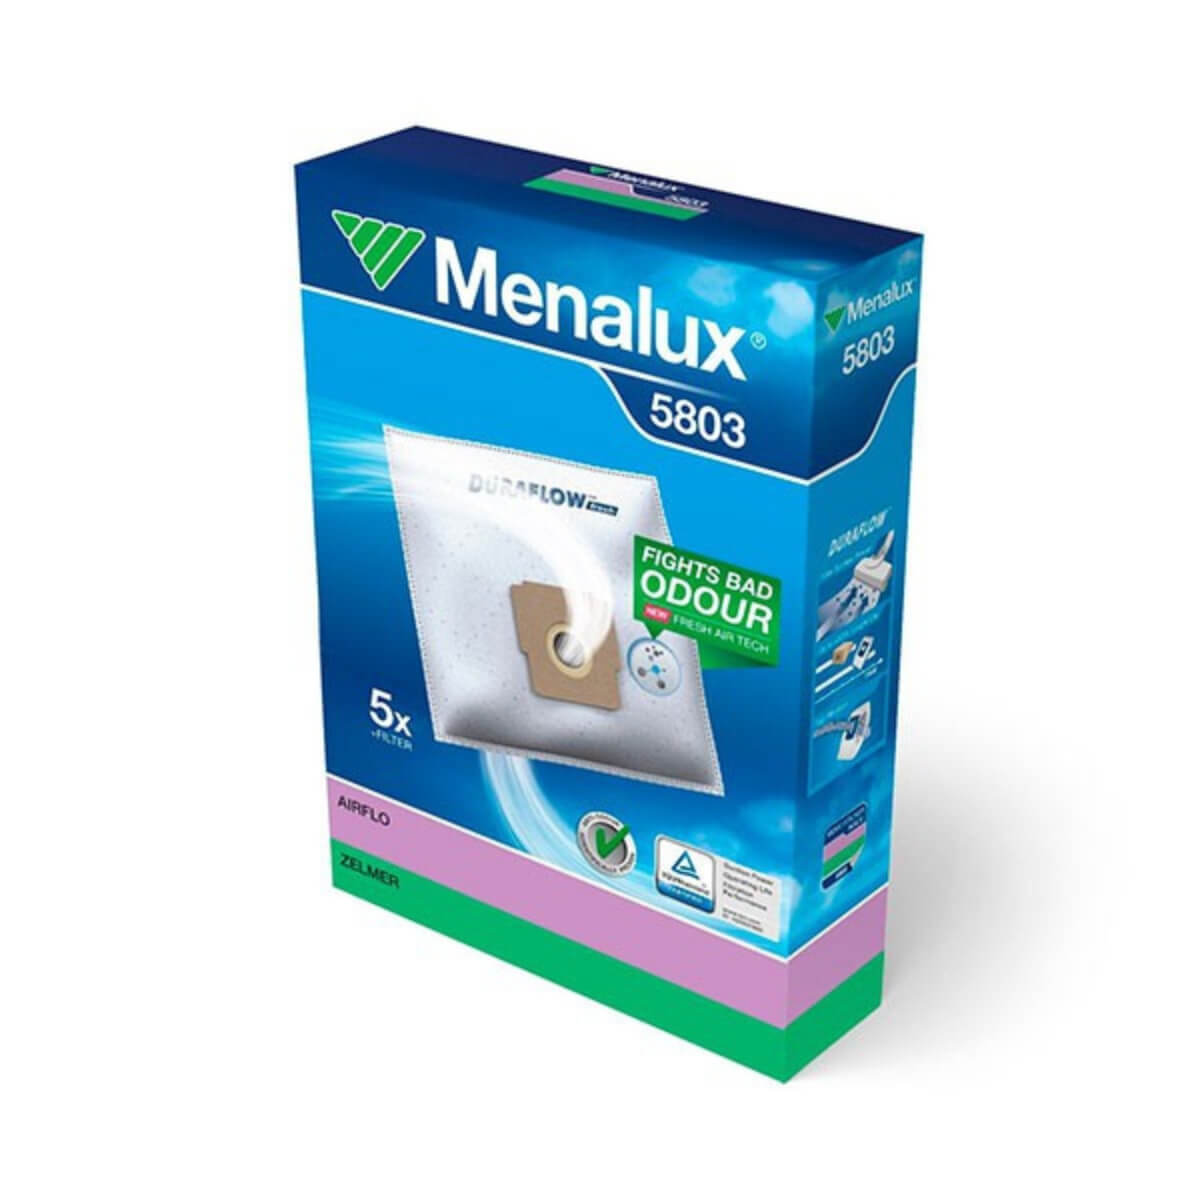 Мешки для пылесоса Menalux 5803 5 шт + фильтр